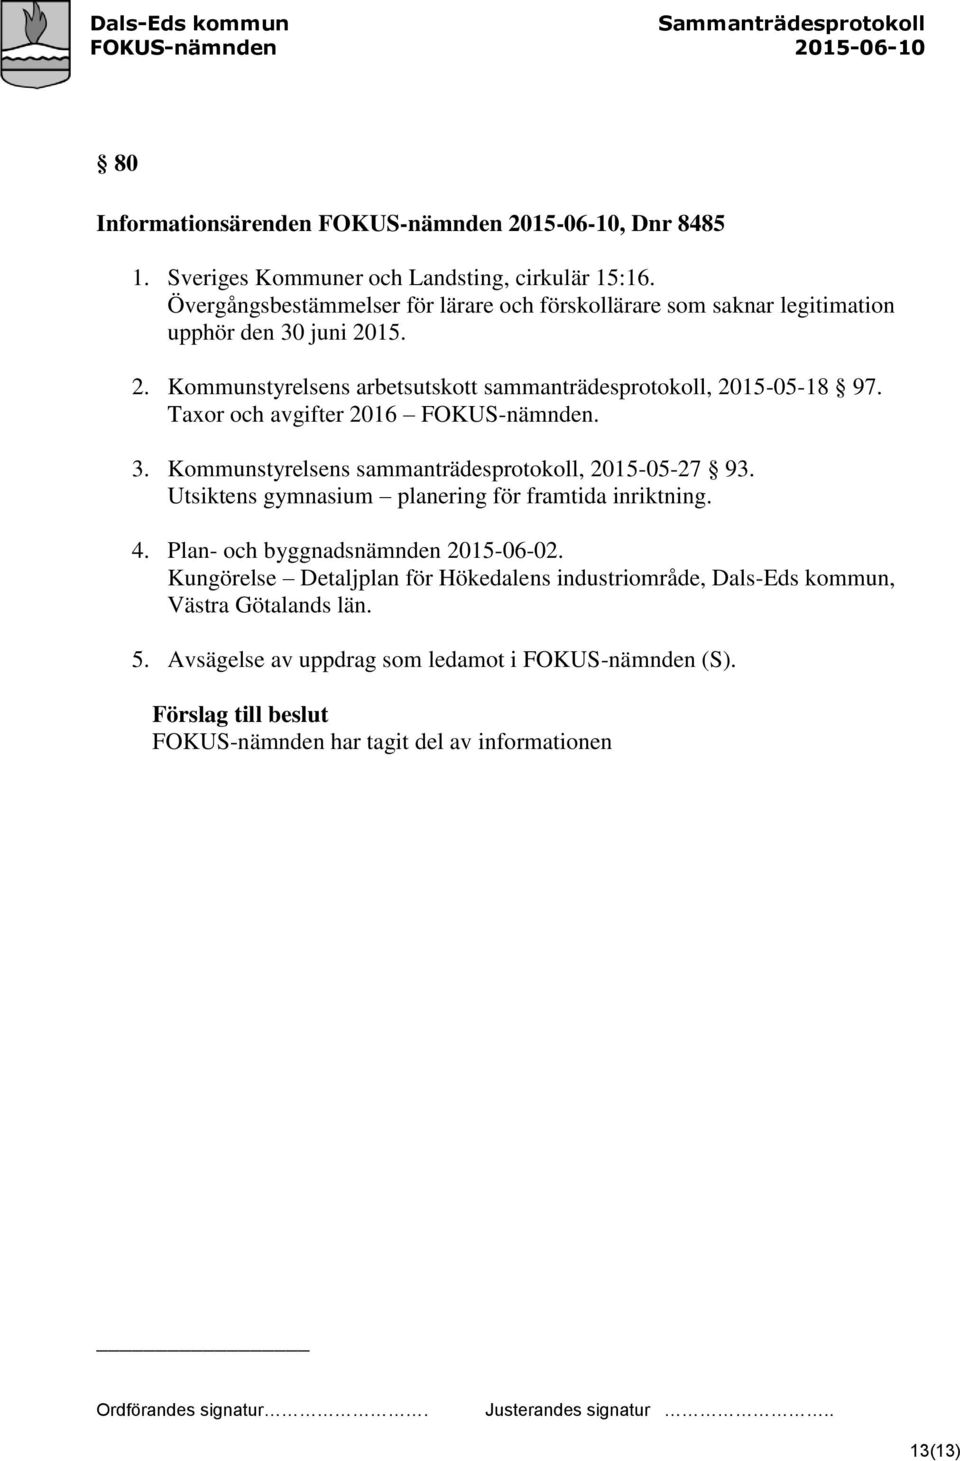 Taxor och avgifter 2016 FOKUS-nämnden. 3. Kommunstyrelsens sammanträdesprotokoll, 2015-05-27 93. Utsiktens gymnasium planering för framtida inriktning. 4.